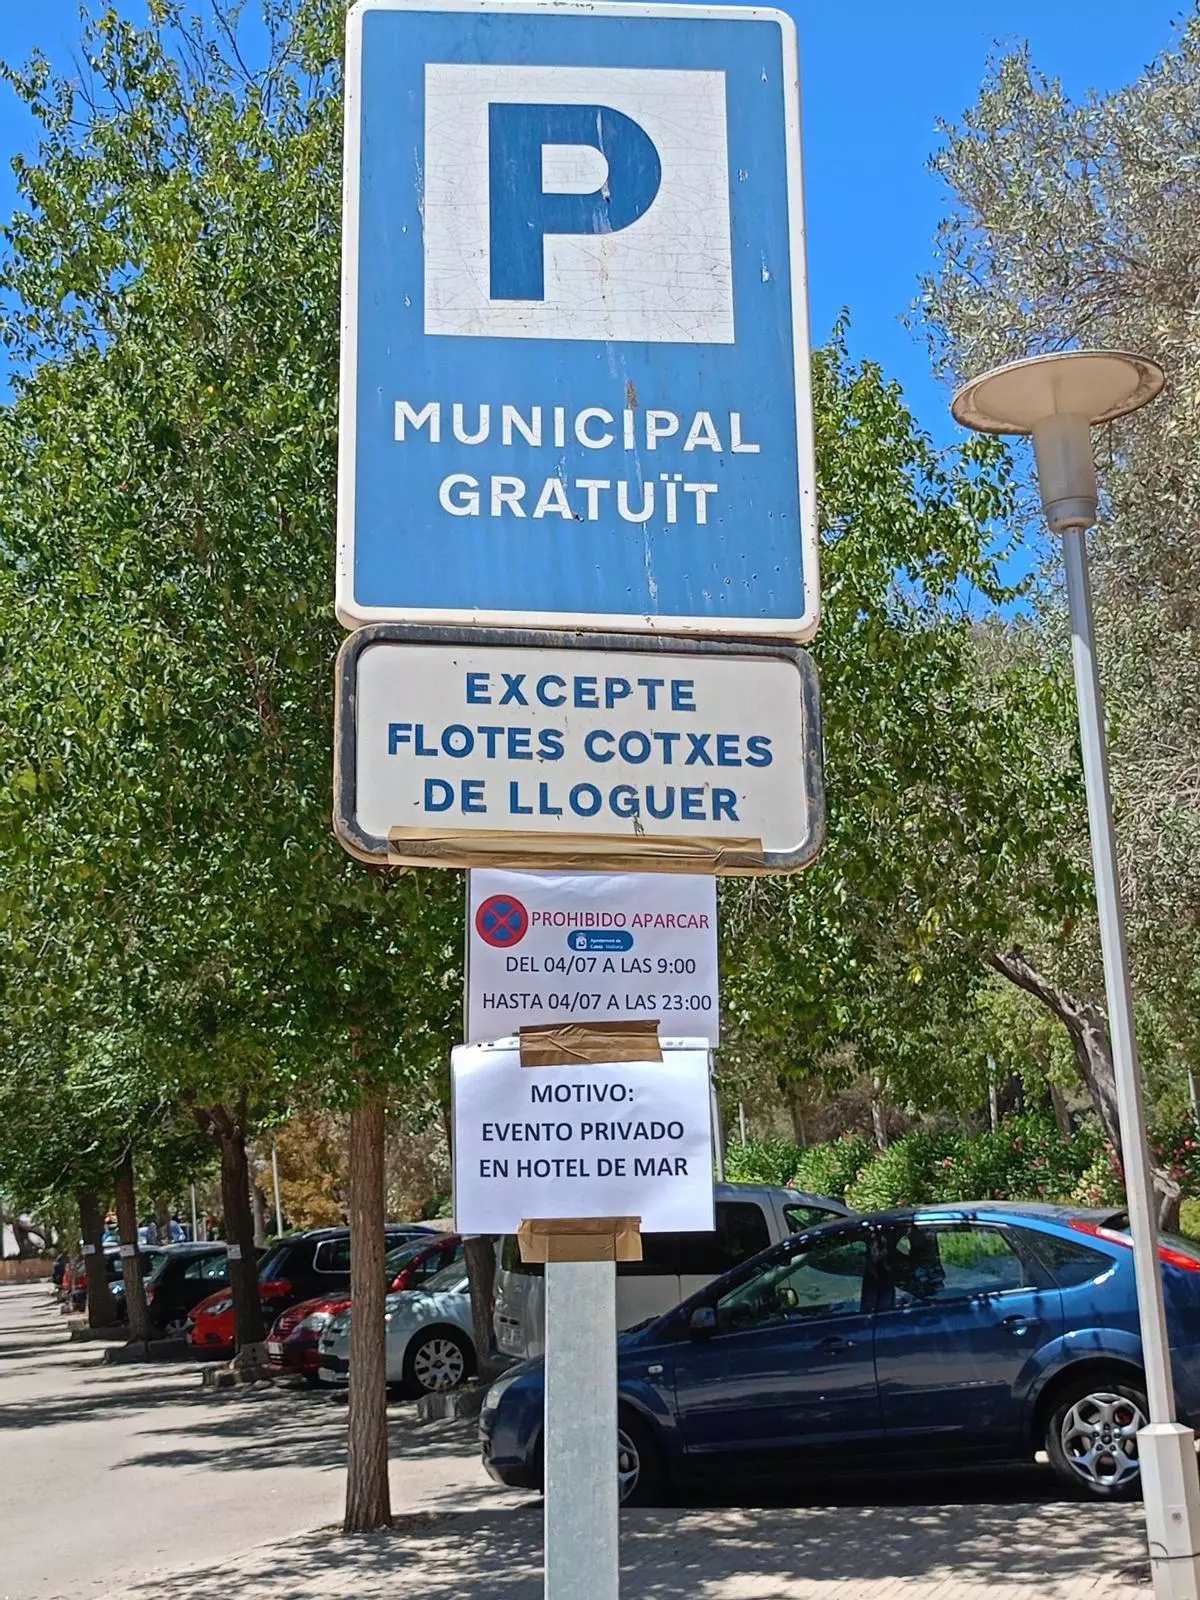 Indignación vecinal por el cierre del único parking público de Illetes por un "evento privado en el Hotel de Mar"